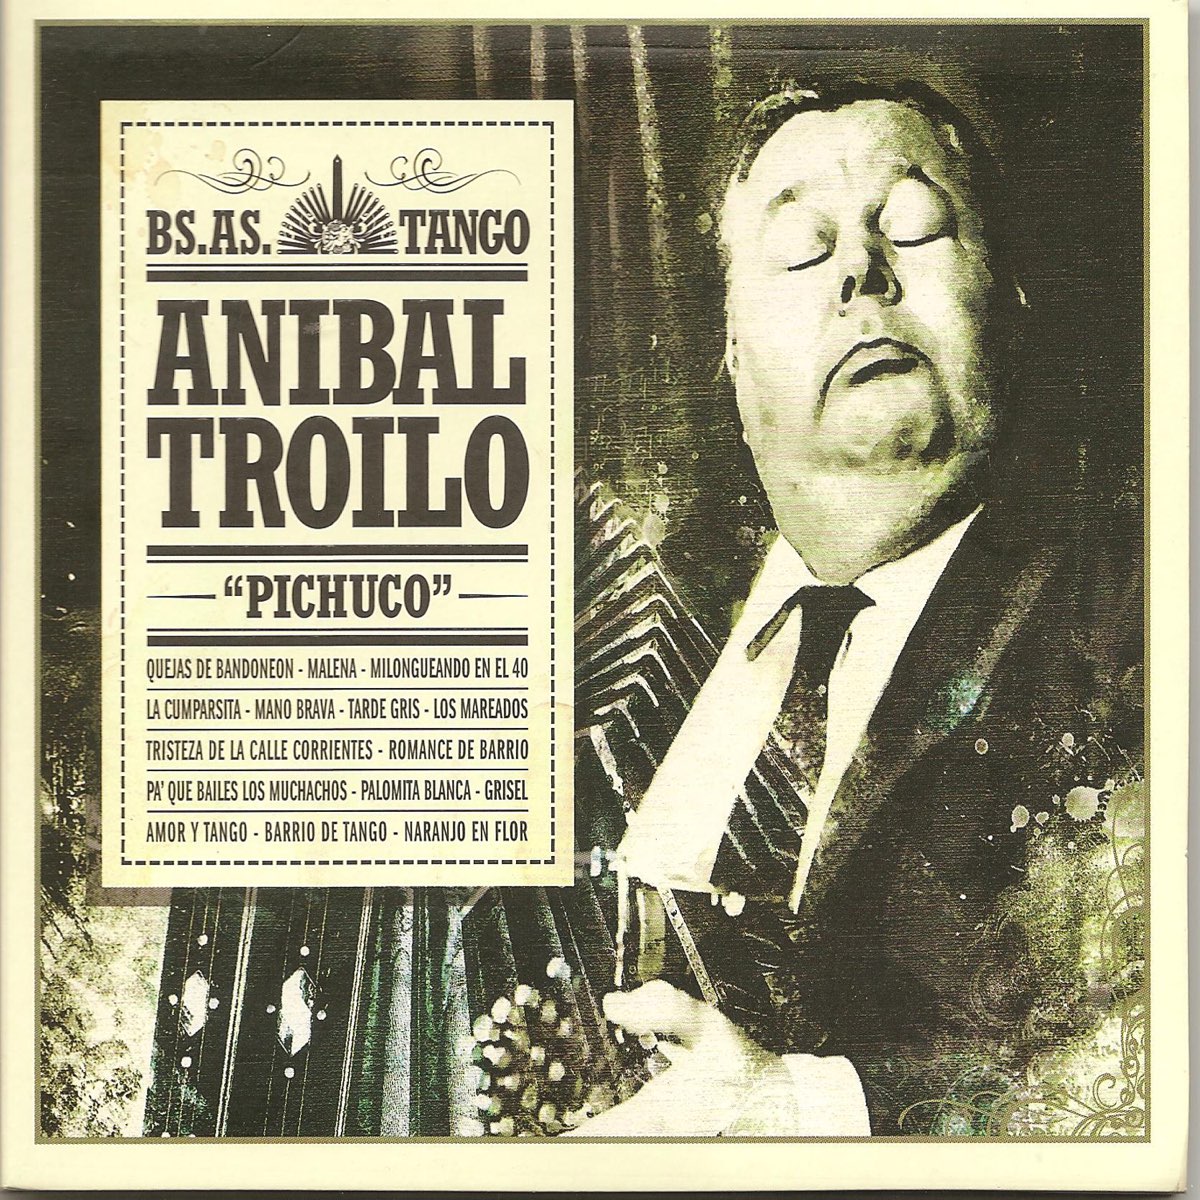 Anibal Troilo "Pichuco" - BS.AS Tango de Aníbal Troilo y Su Orquesta en  Apple Music